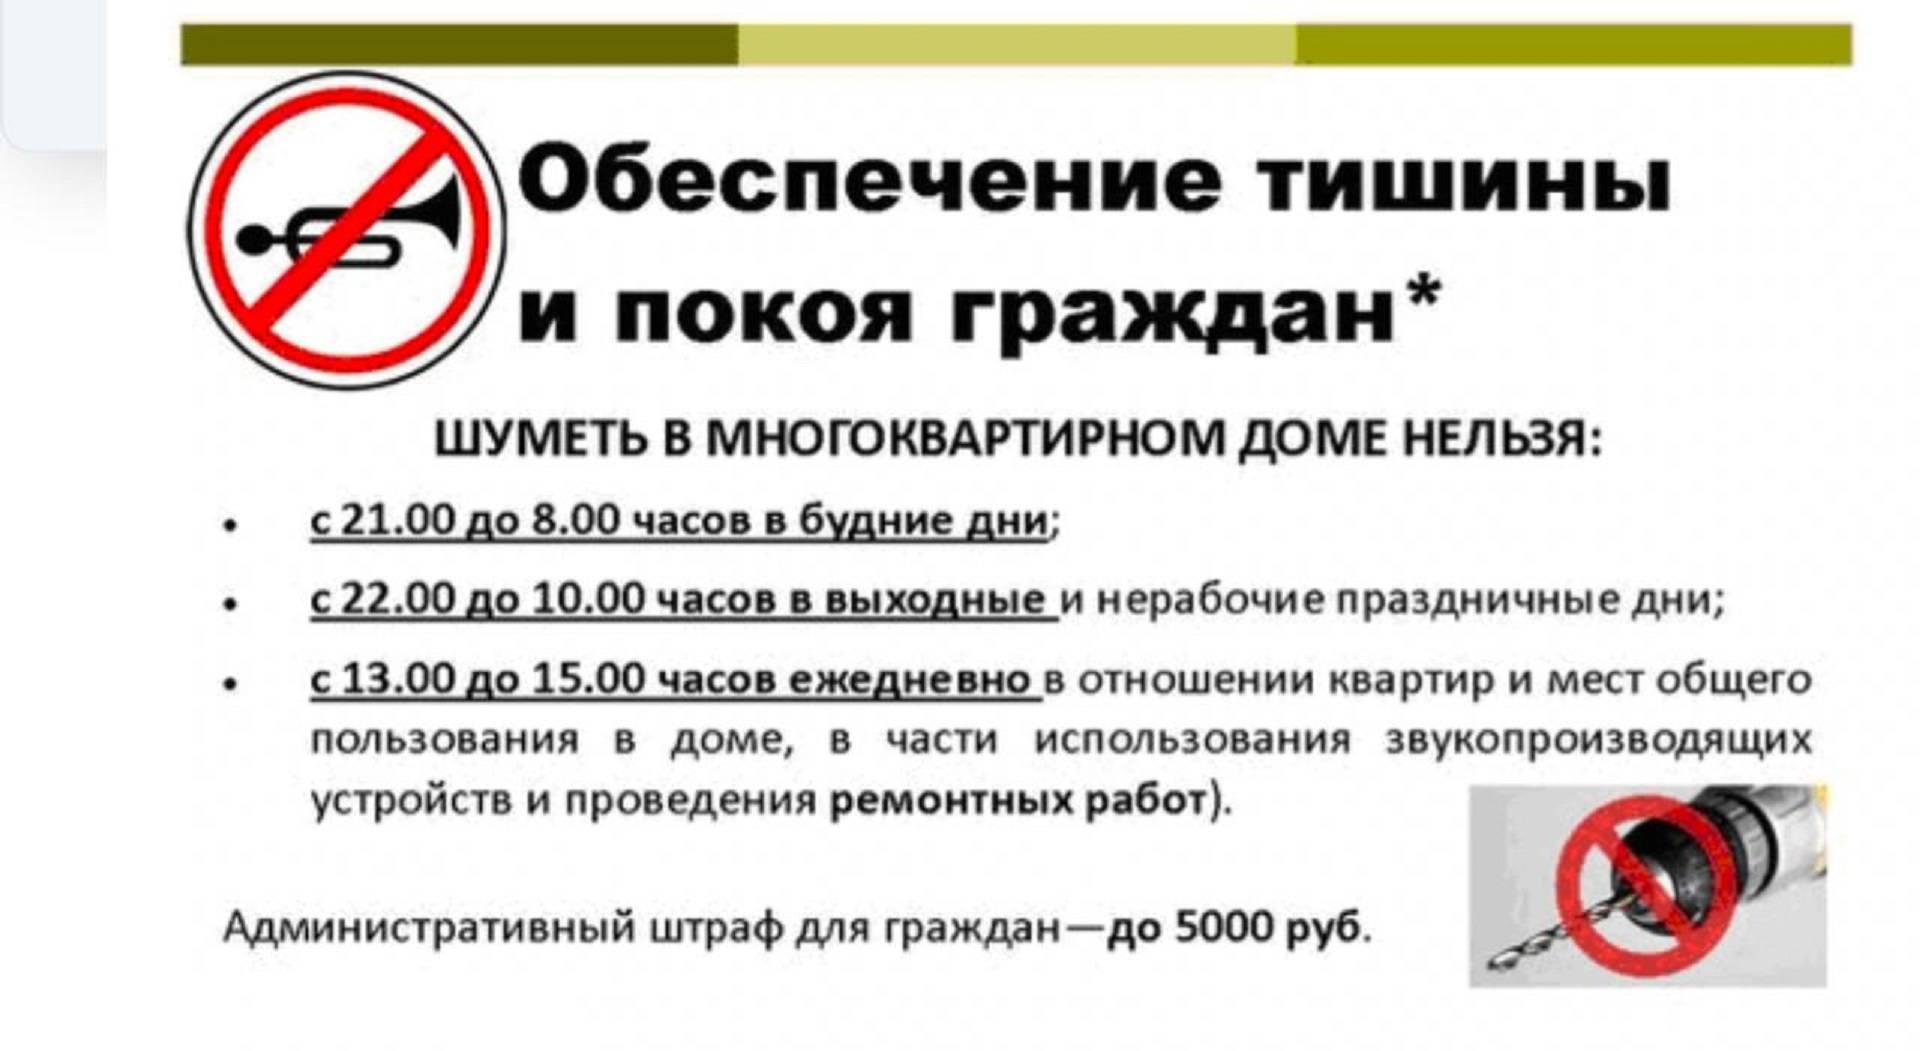 Закон о тишине в санкт-петербурге 2022 года: официальный текст, режим, поправки на ремонтные работы, до скольки можно шуметь, сверлить в квартире, тихий час